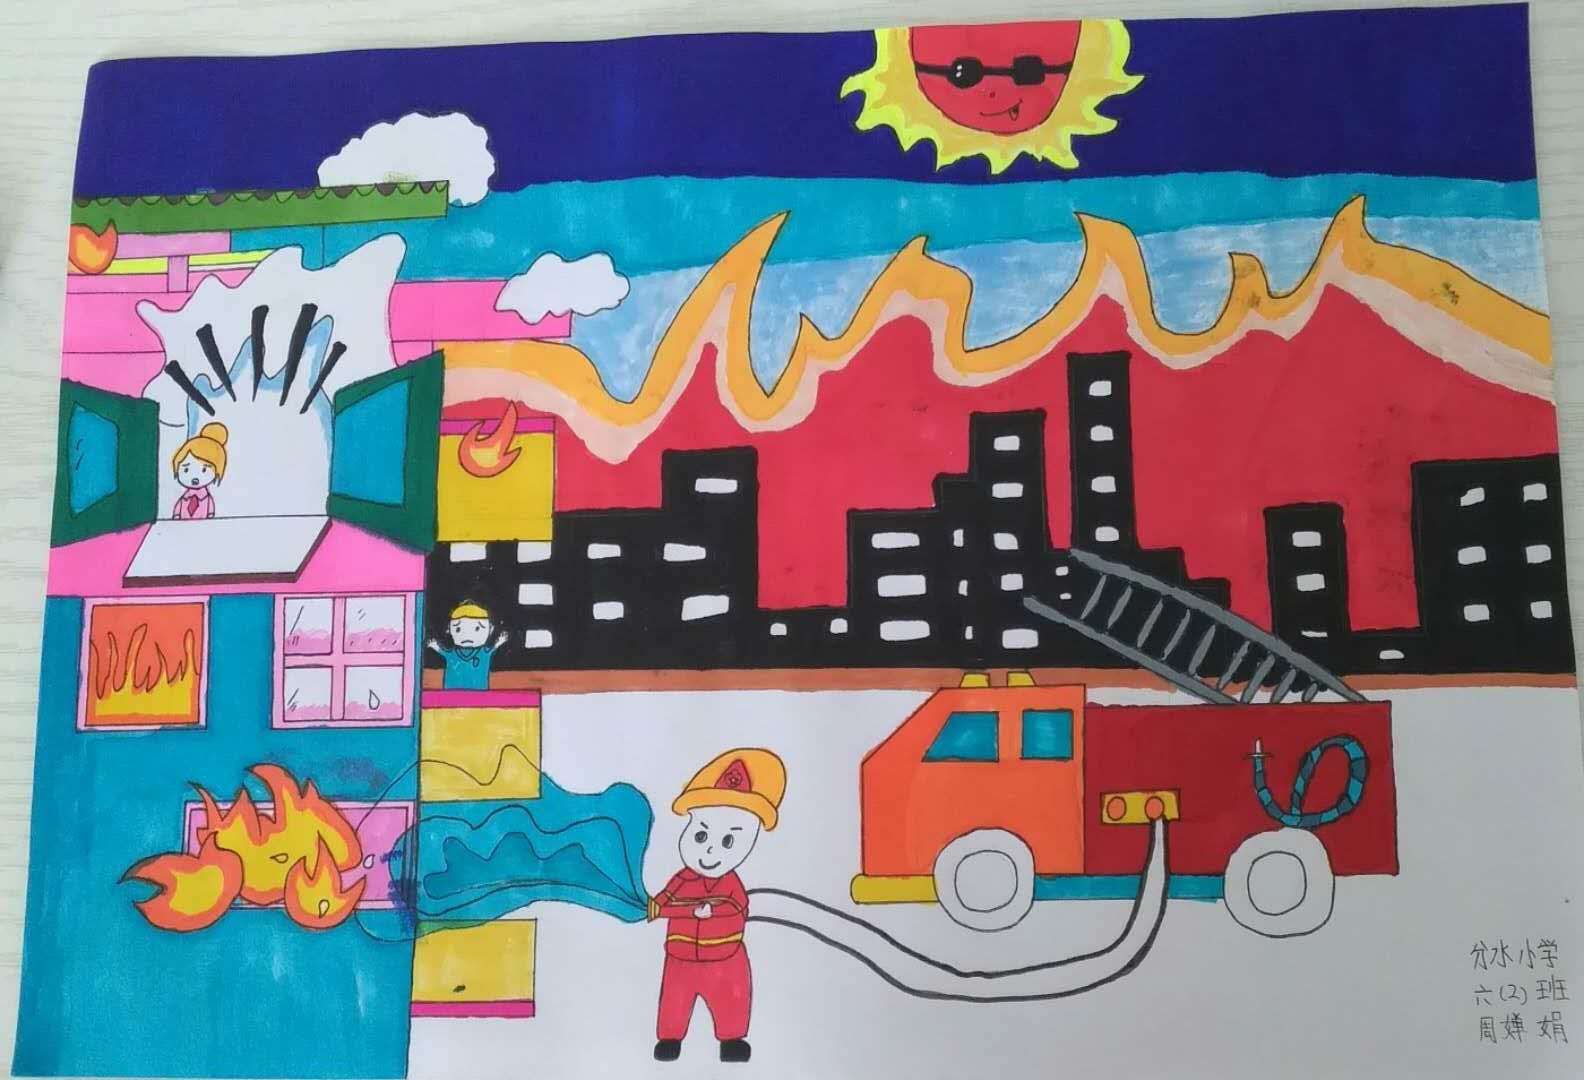 分水镇消防安全周学生绘画,征文作品展